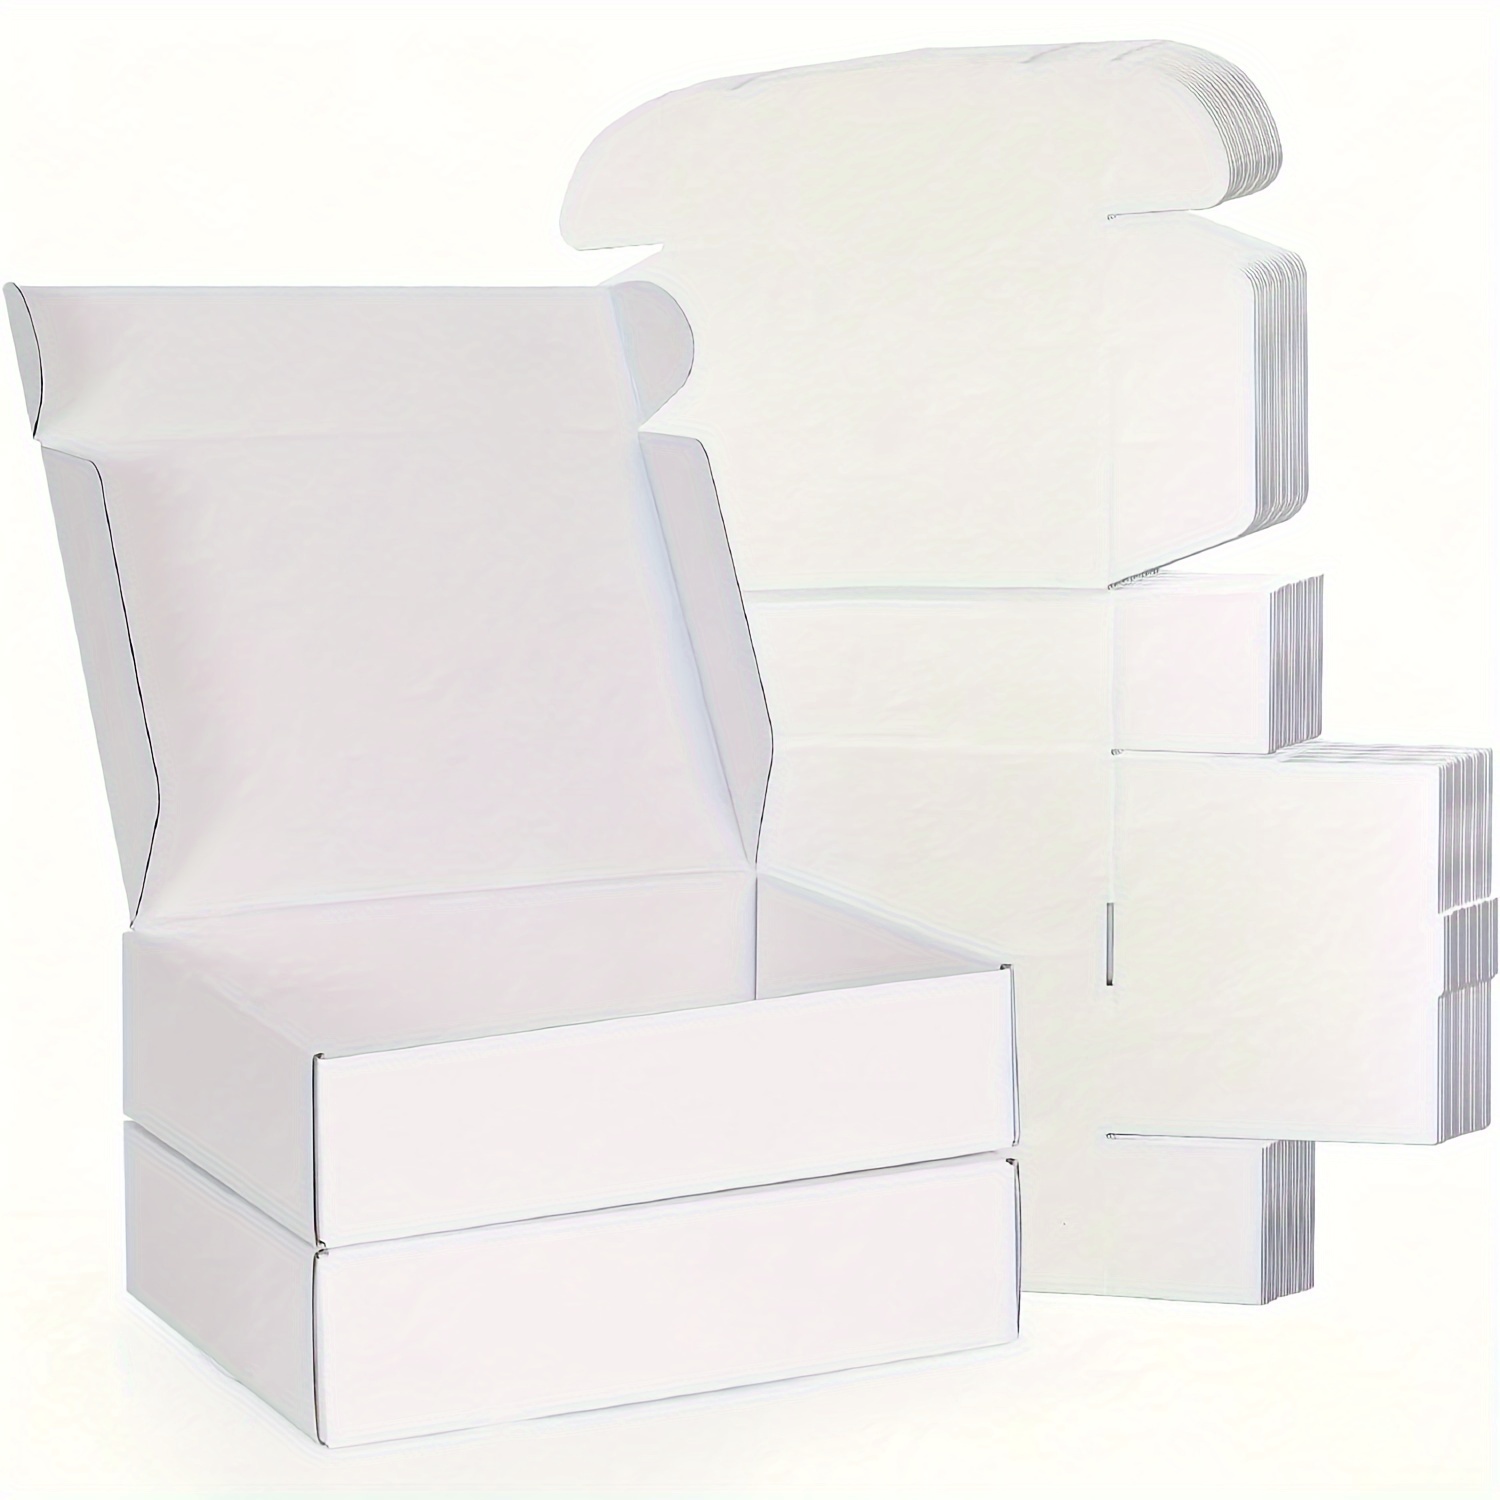 Las mejores ofertas en Envío de Cartón de alta resistencia y cajas